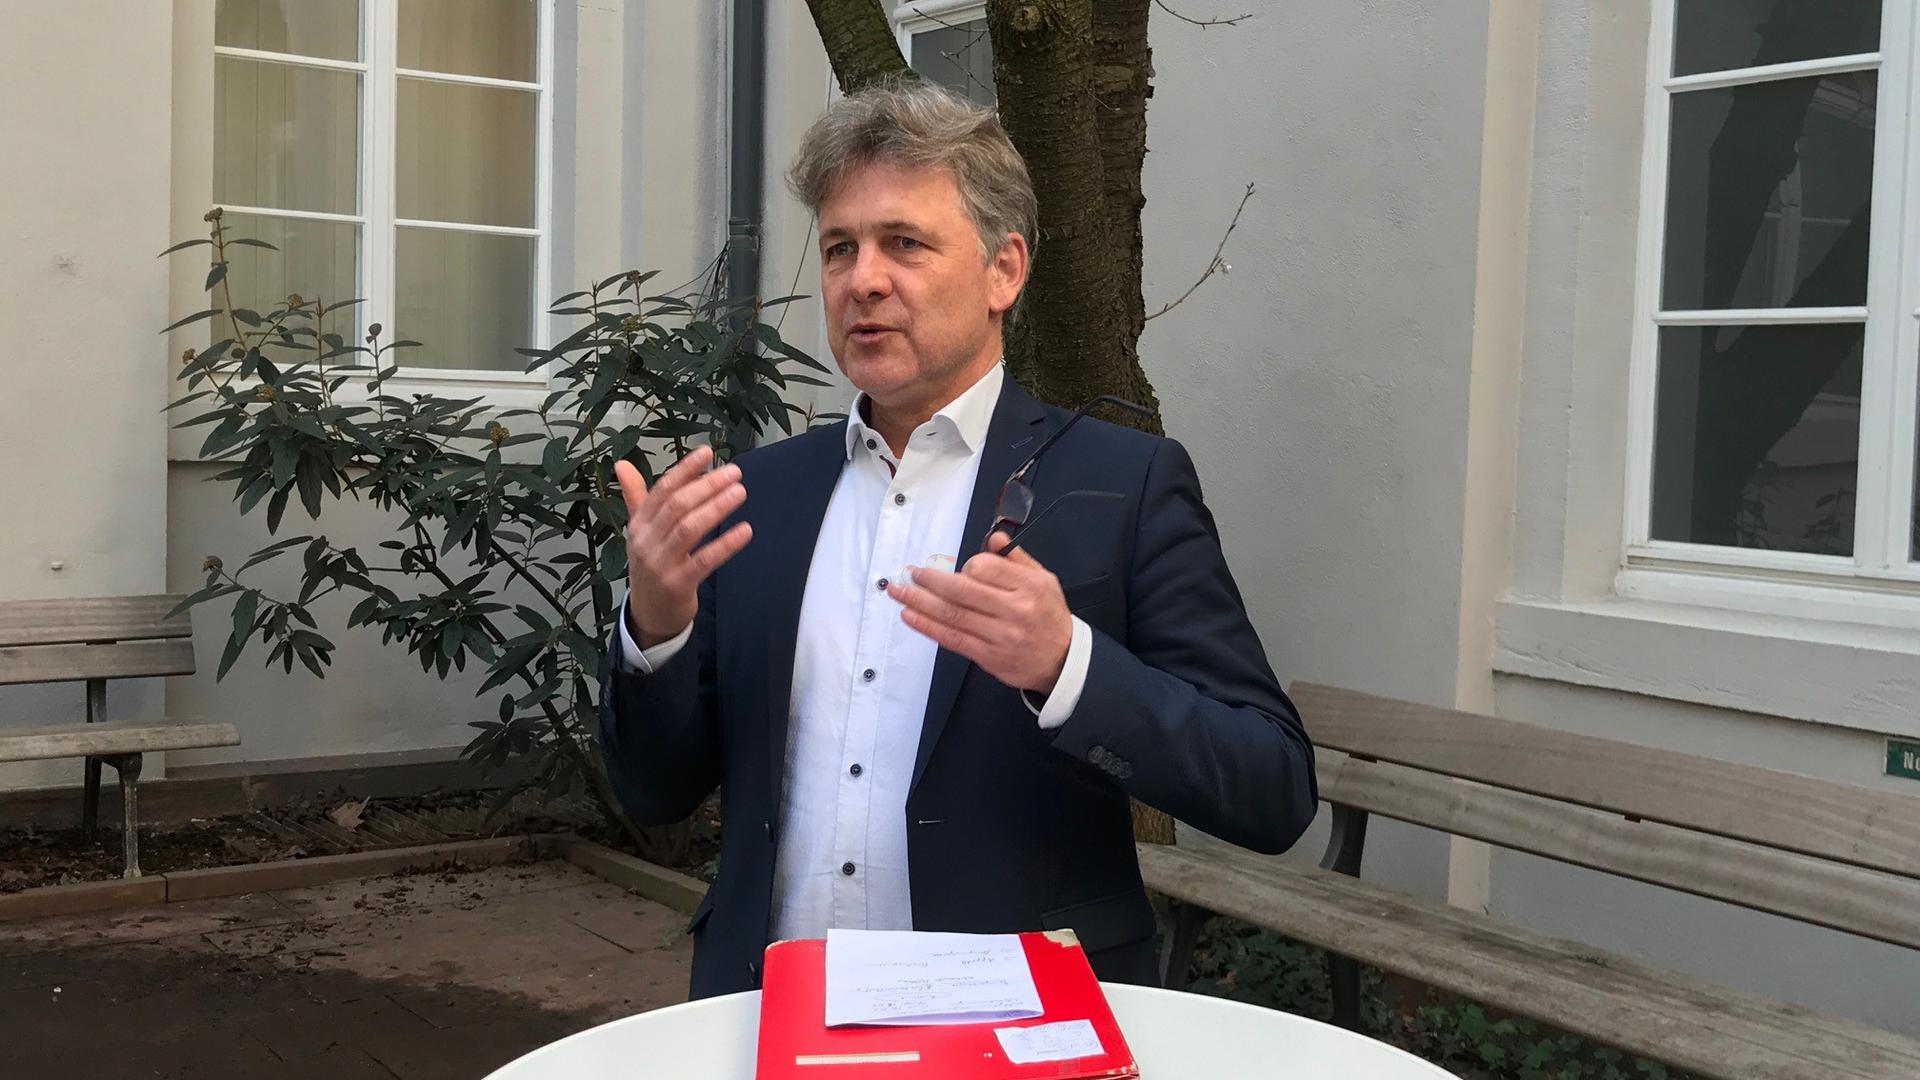 Karlsruhes Oberbürgermeister Mentrup bei der Pressekonferenz im Hinterhof des Rathauses.